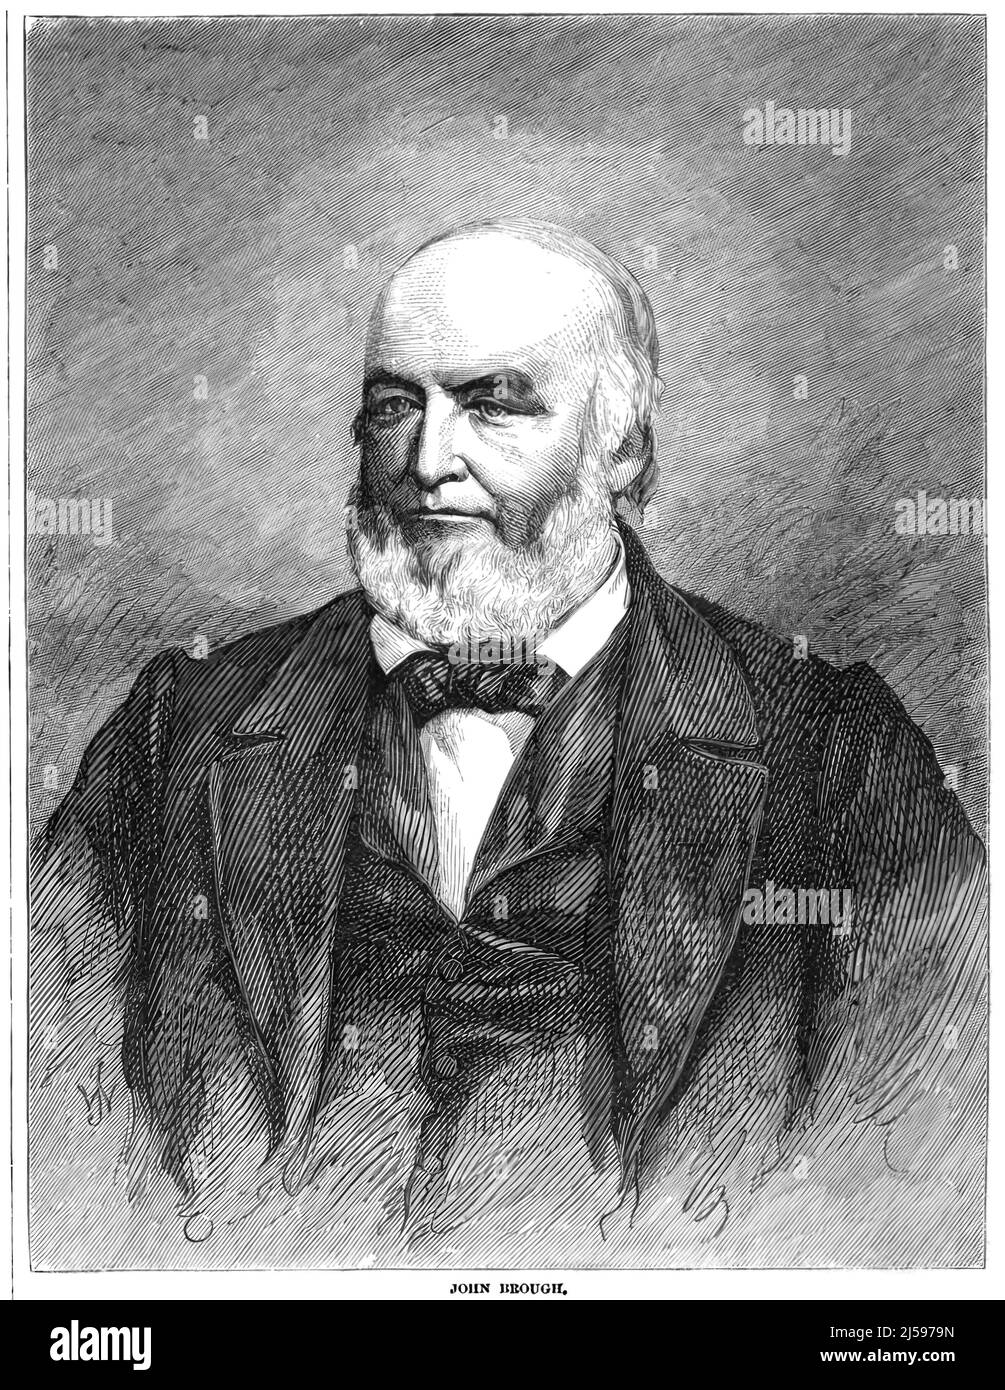 Porträt von John Brough, Gouverneur von Ohio während des amerikanischen Bürgerkriegs und Kriegsdemokrat. 19.-Jahrhundert-Illustration Stockfoto